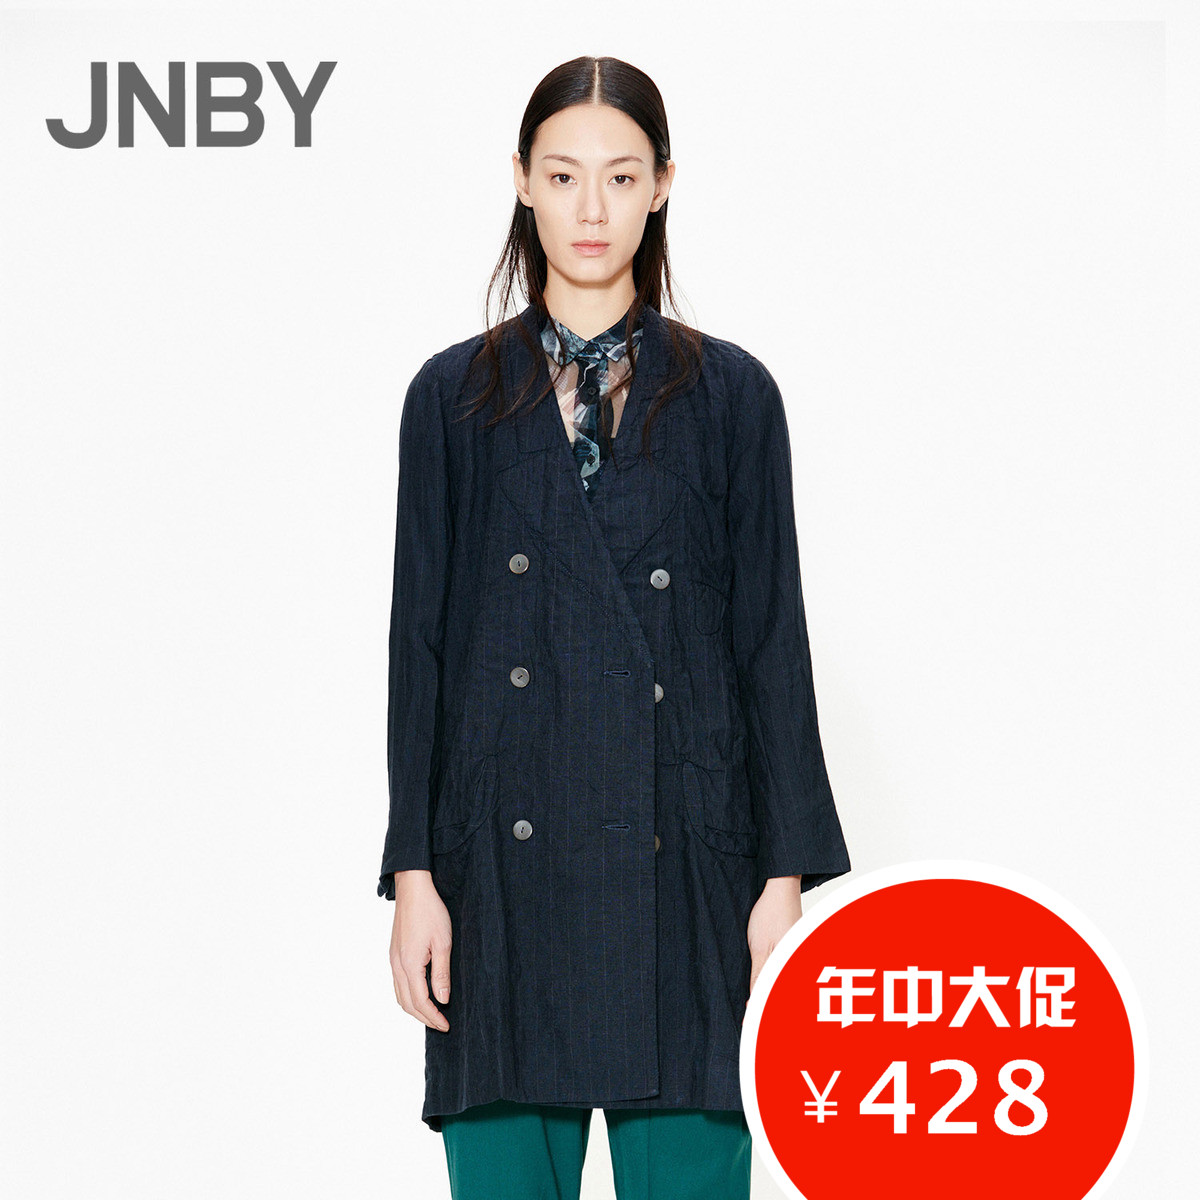 JNBY/江南布衣冬装特价正品 时尚塑身女式中长款纯色外套5F221086